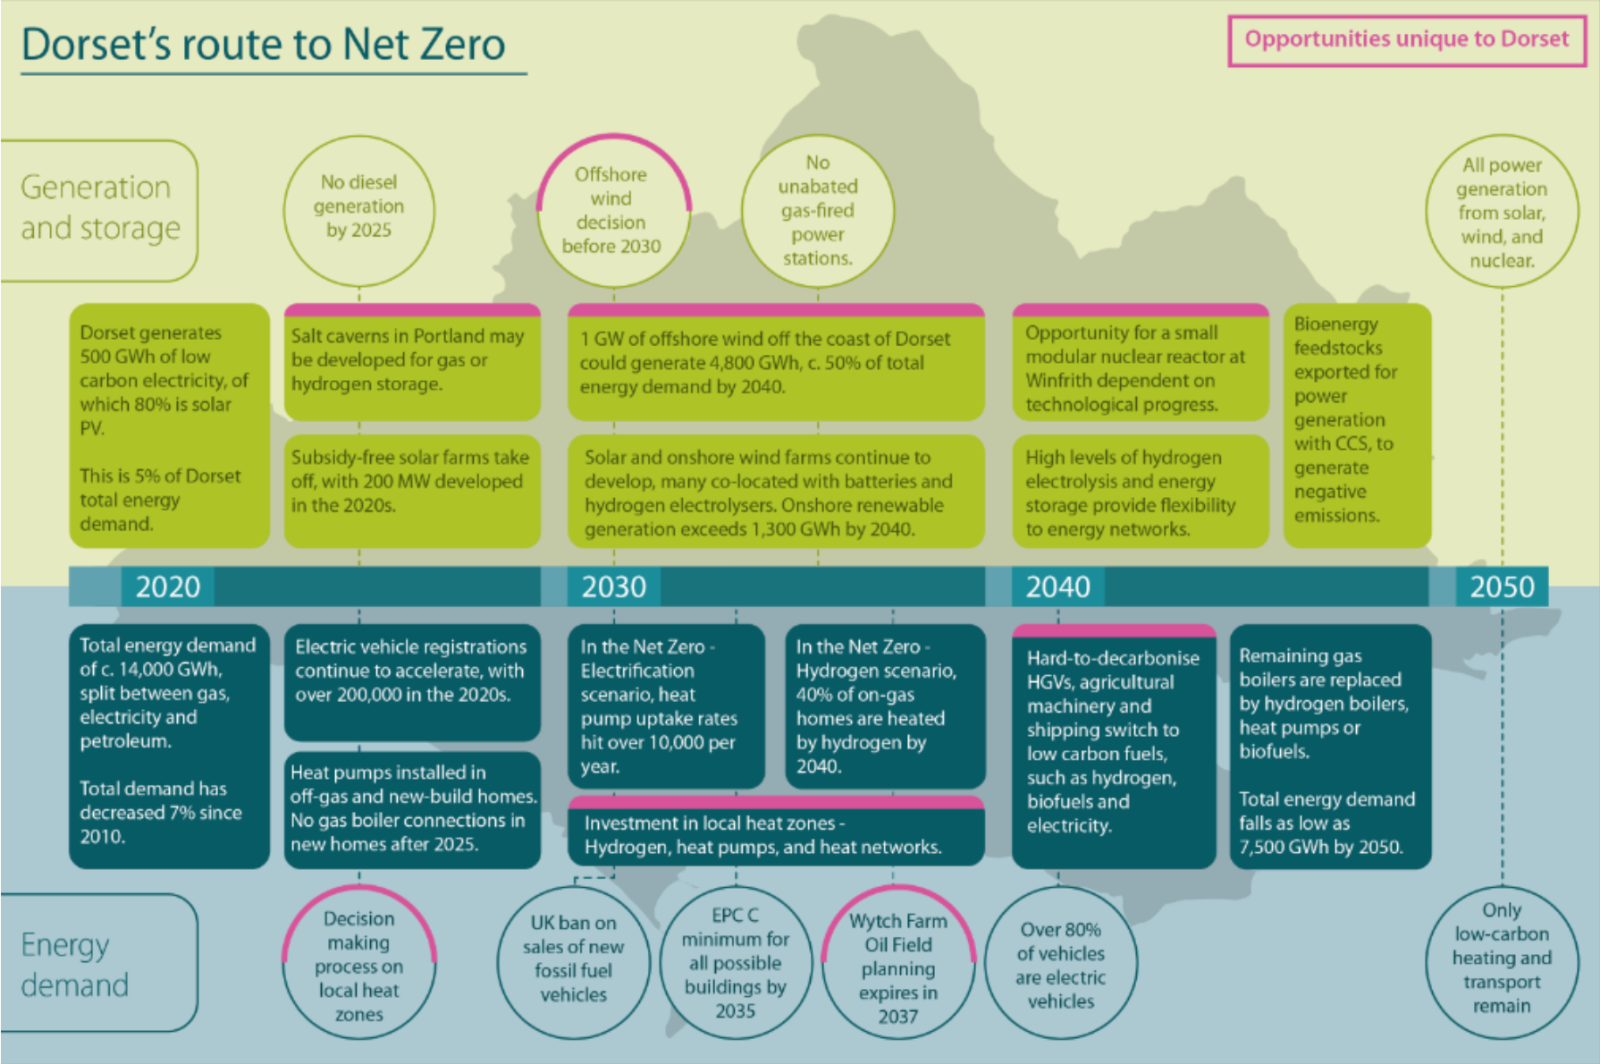 Dorset's route to net zero